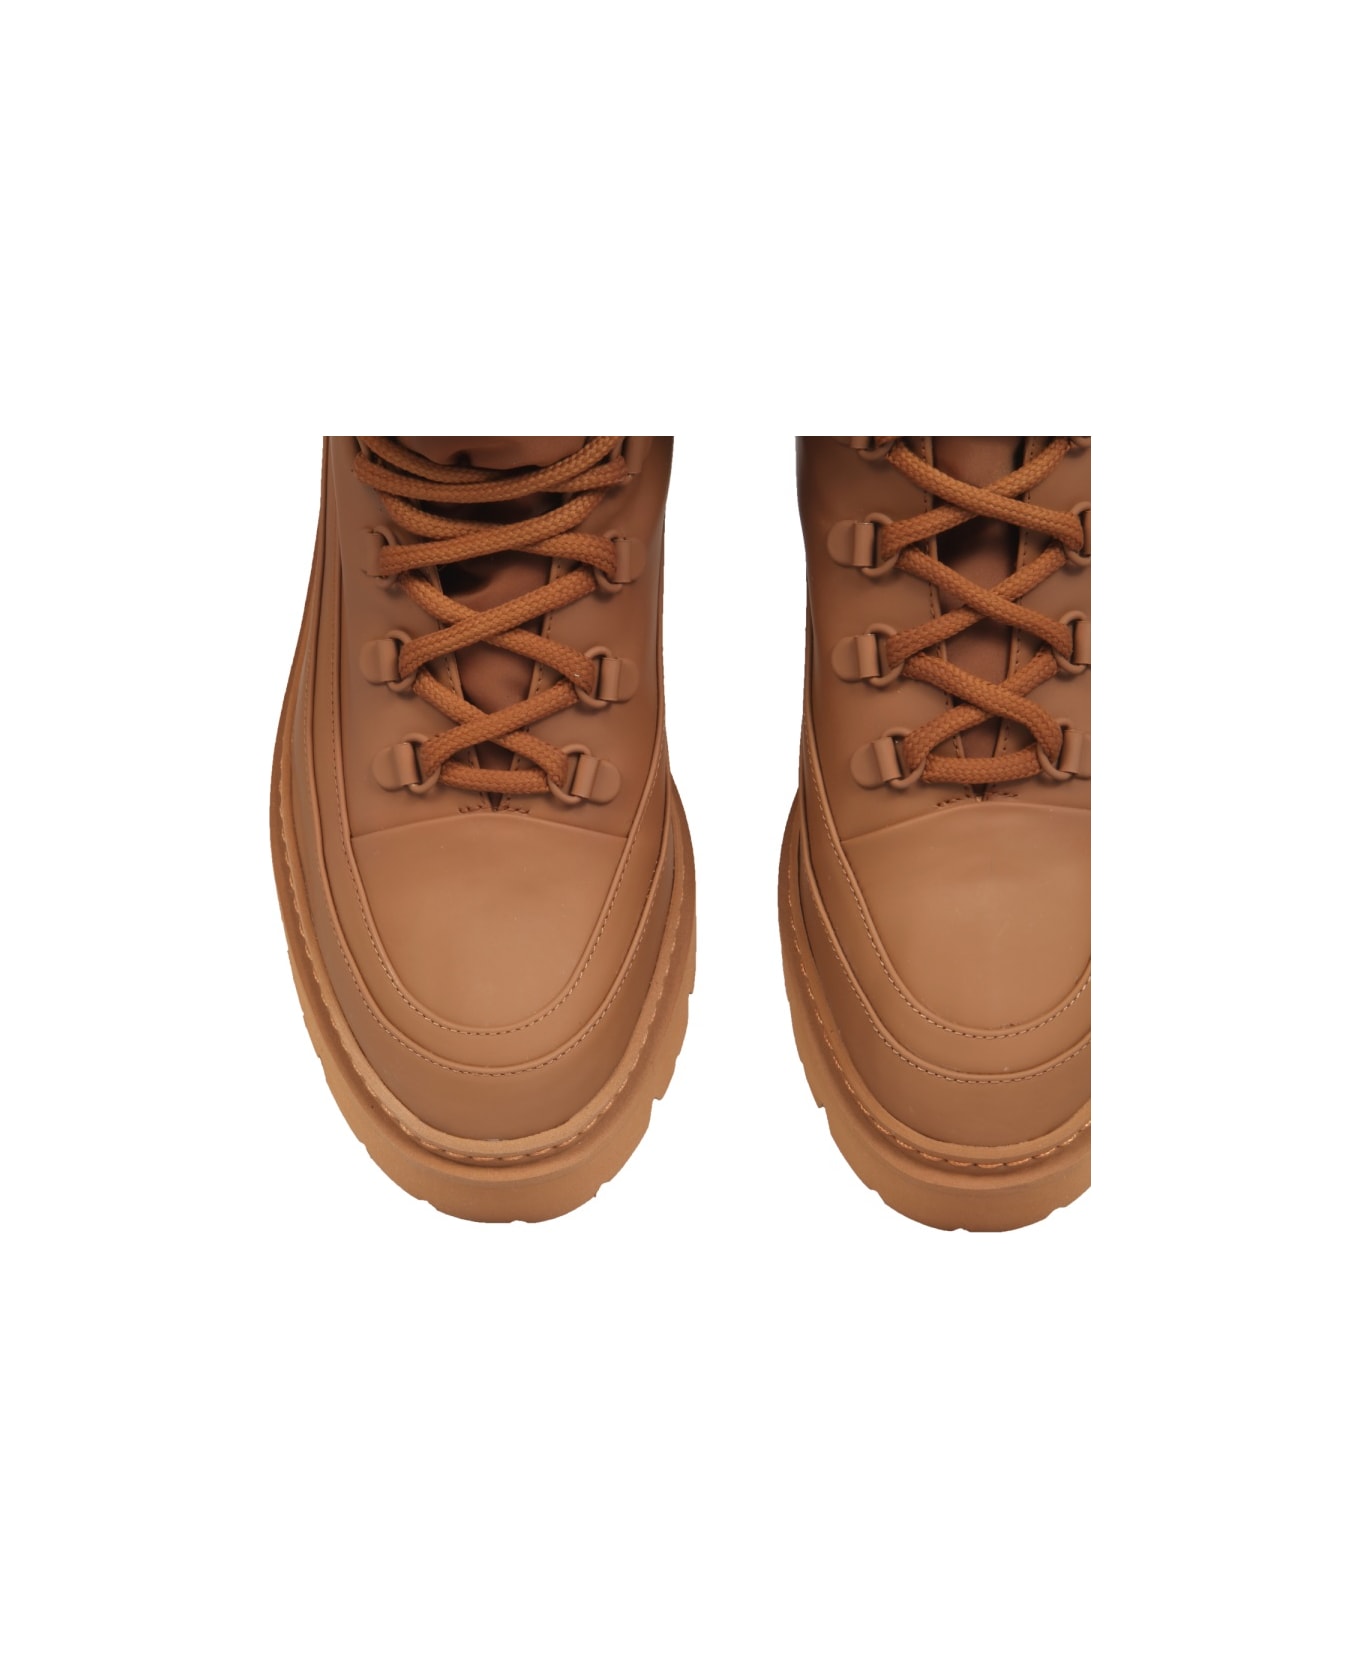 GIA BORGHINI "terra" Hiking Boots - BROWN ブーツ